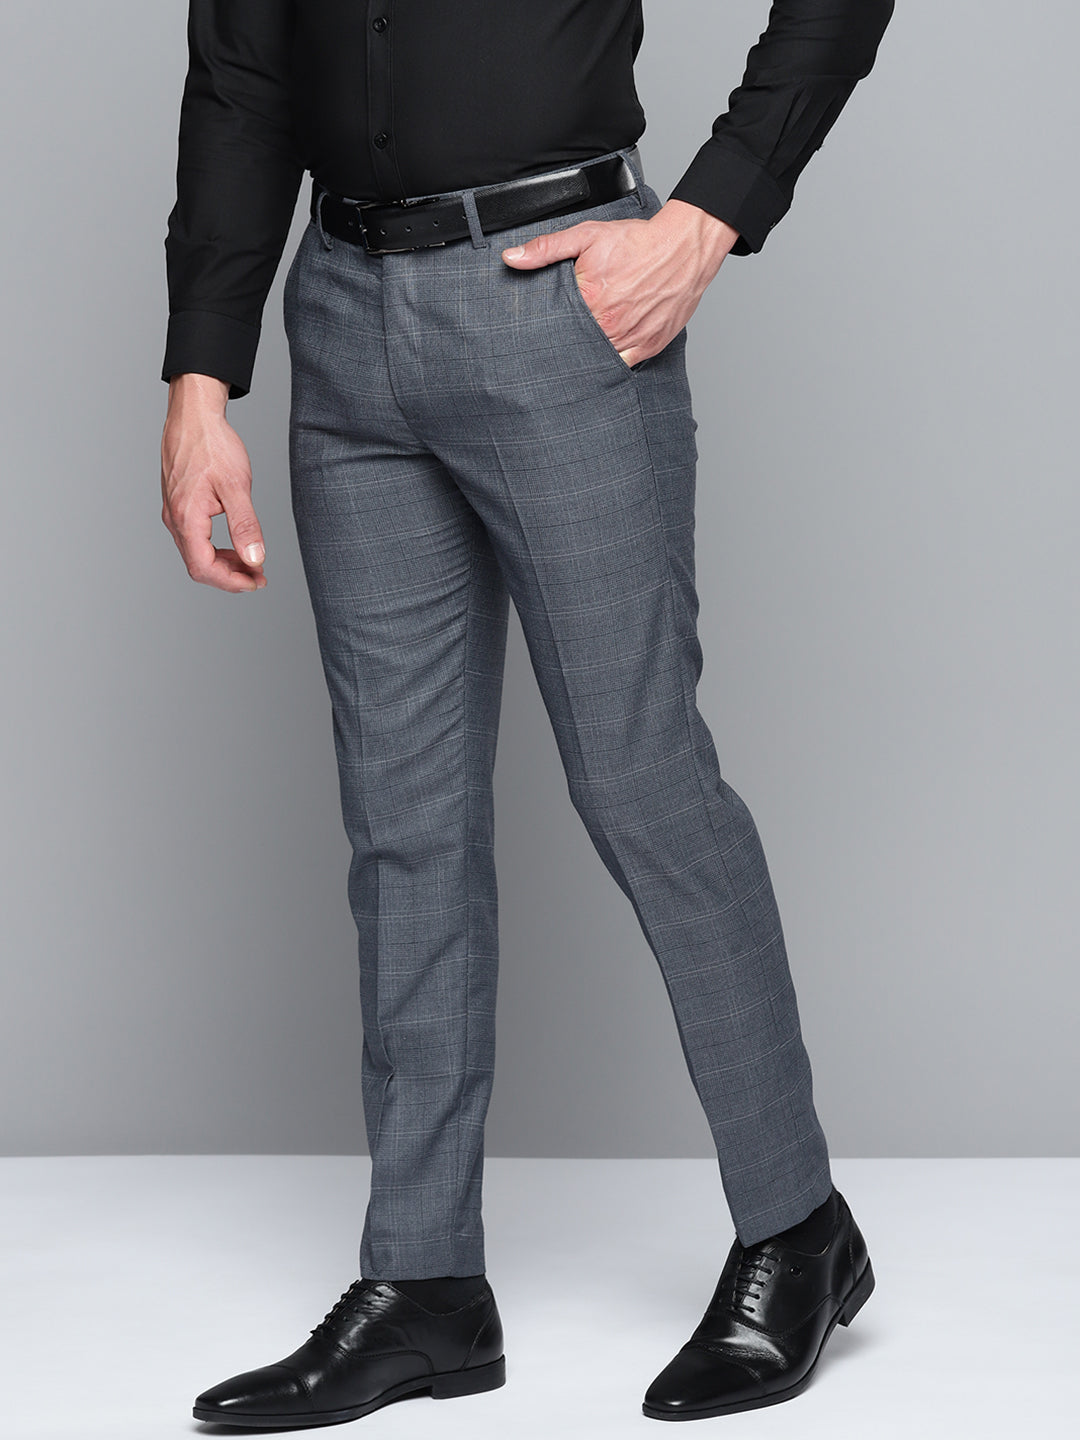 Classic Design Dress Pants Men's Semi formal Solid Color - Temu